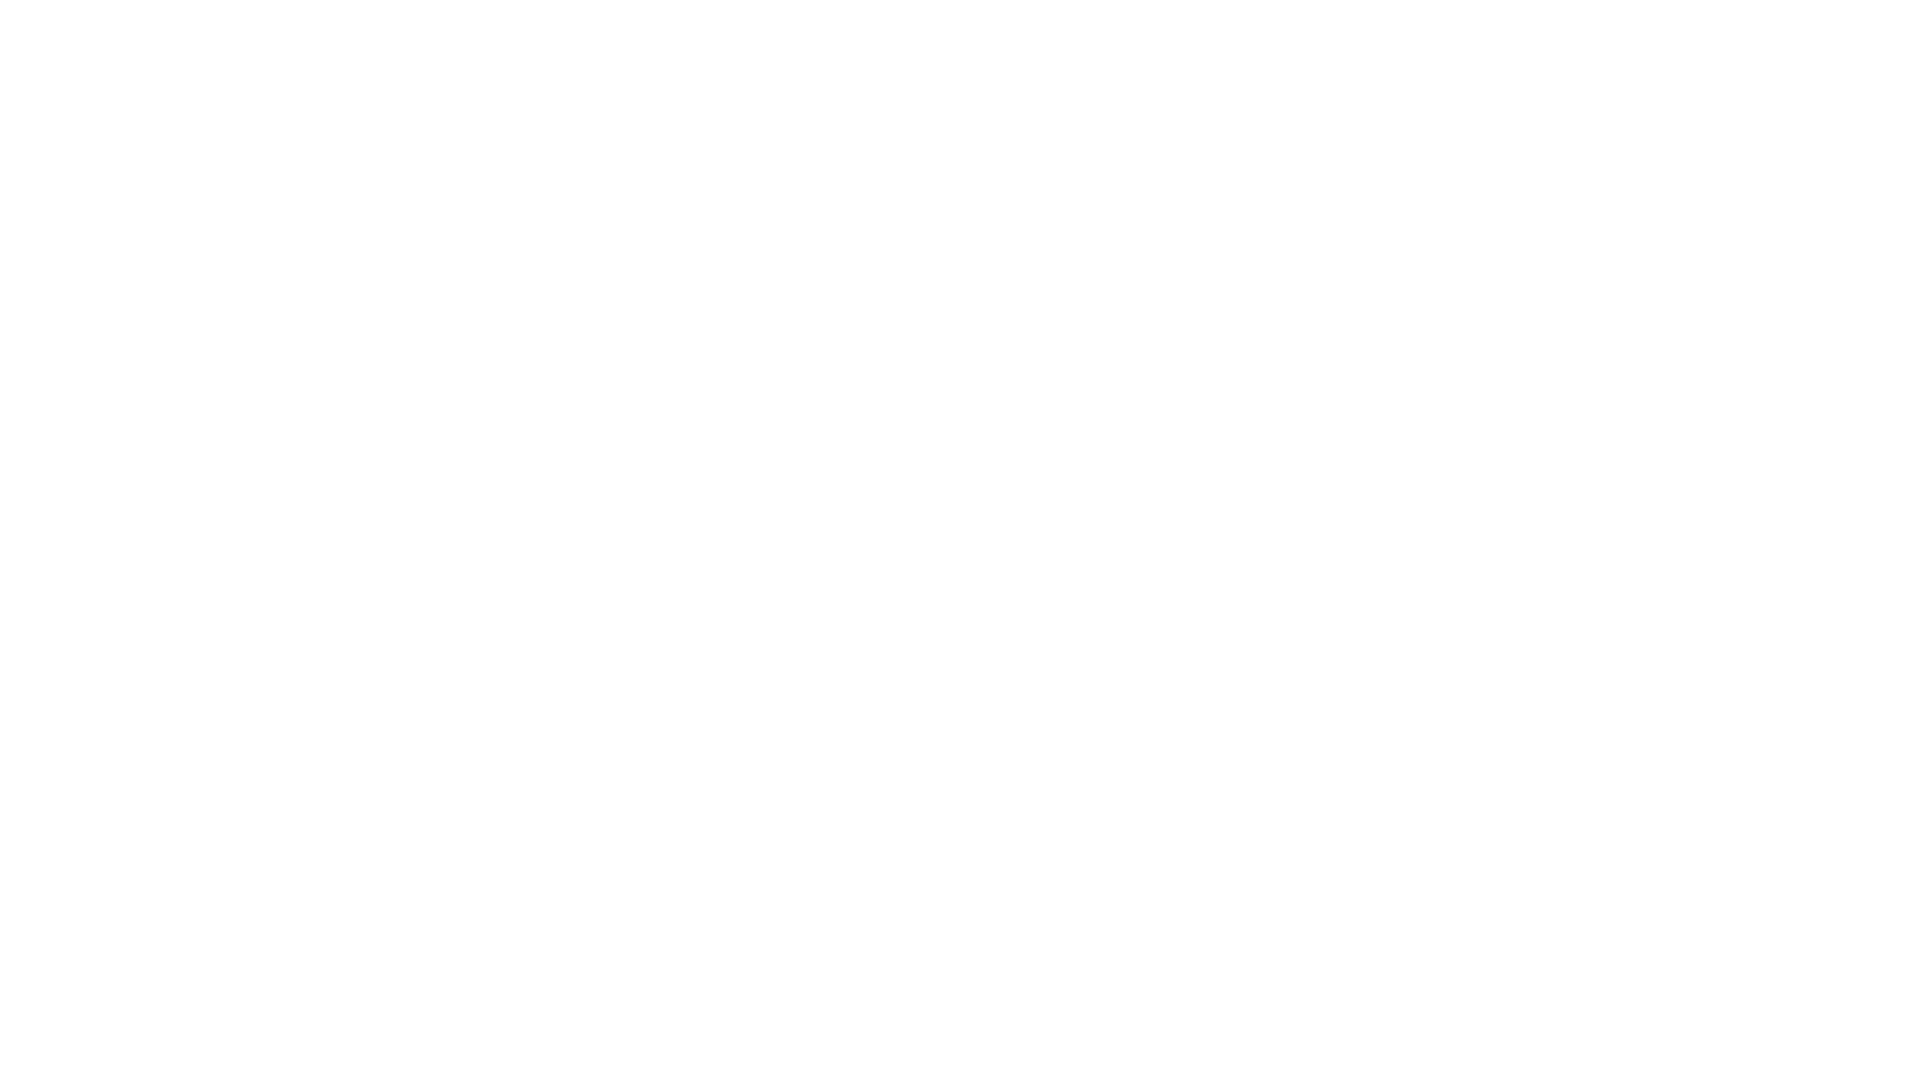 Fear the Beast